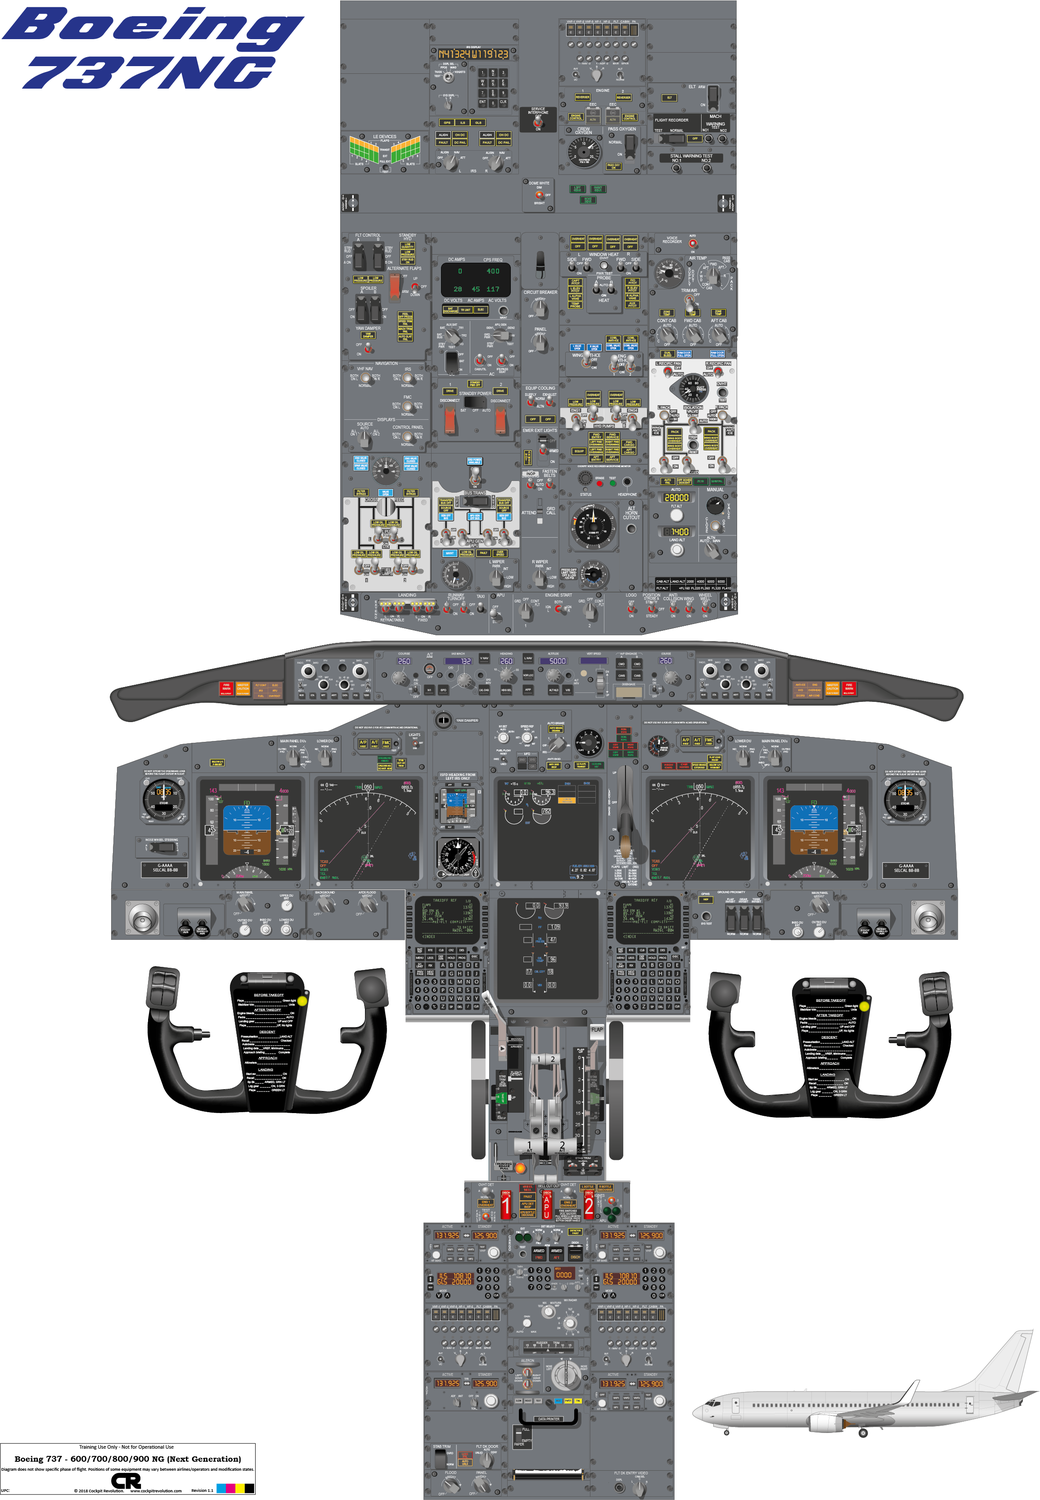 Boeing 737-600/700/800/900 NG Cockpit Poster - Digital Download